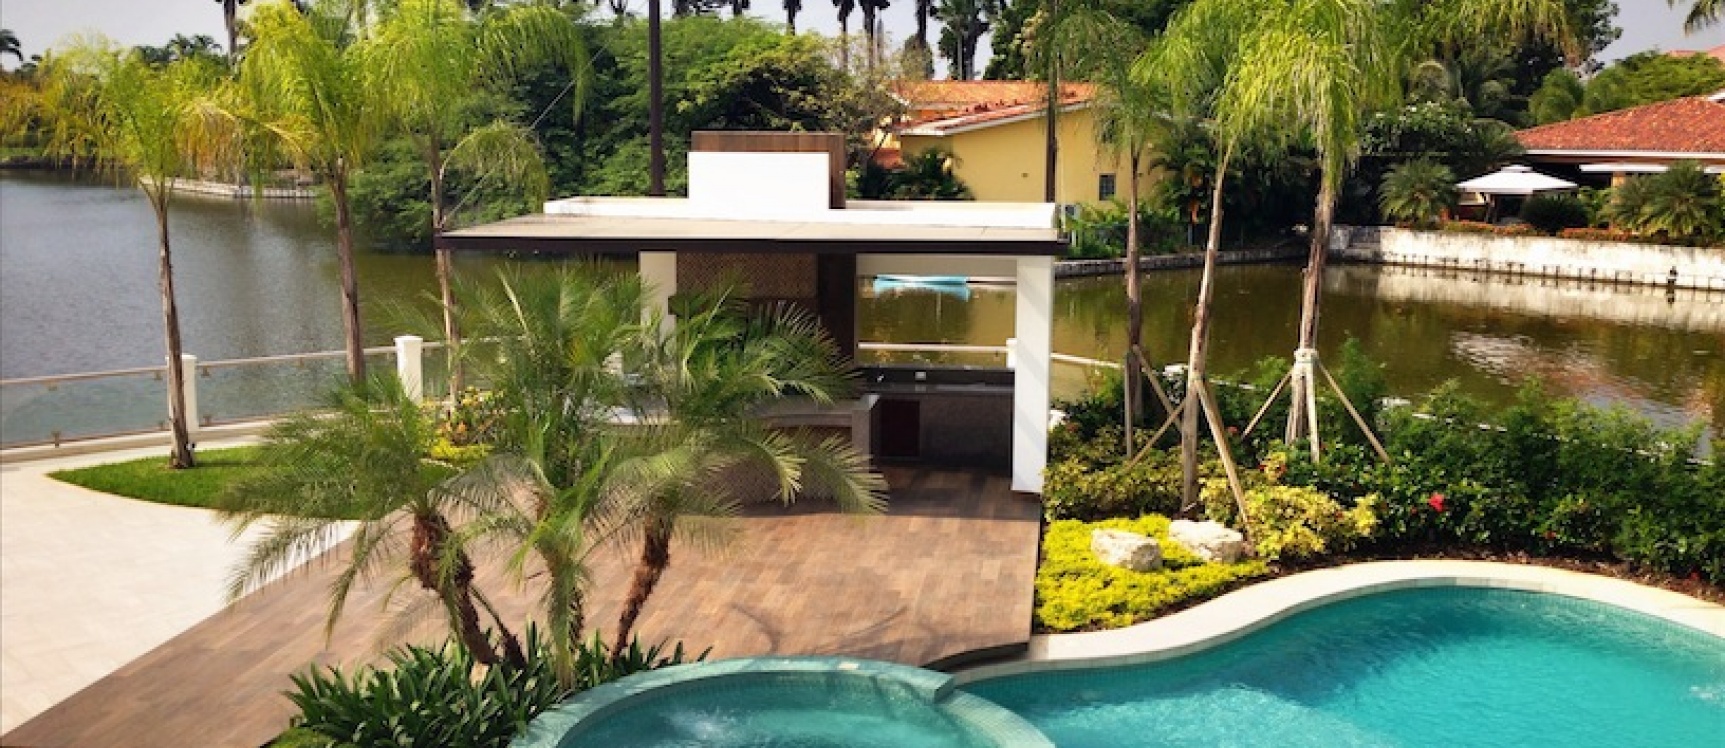 GeoBienes - Los Lagos Samborondón casa en venta - Plusvalia Guayaquil Casas de venta y alquiler Inmobiliaria Ecuador